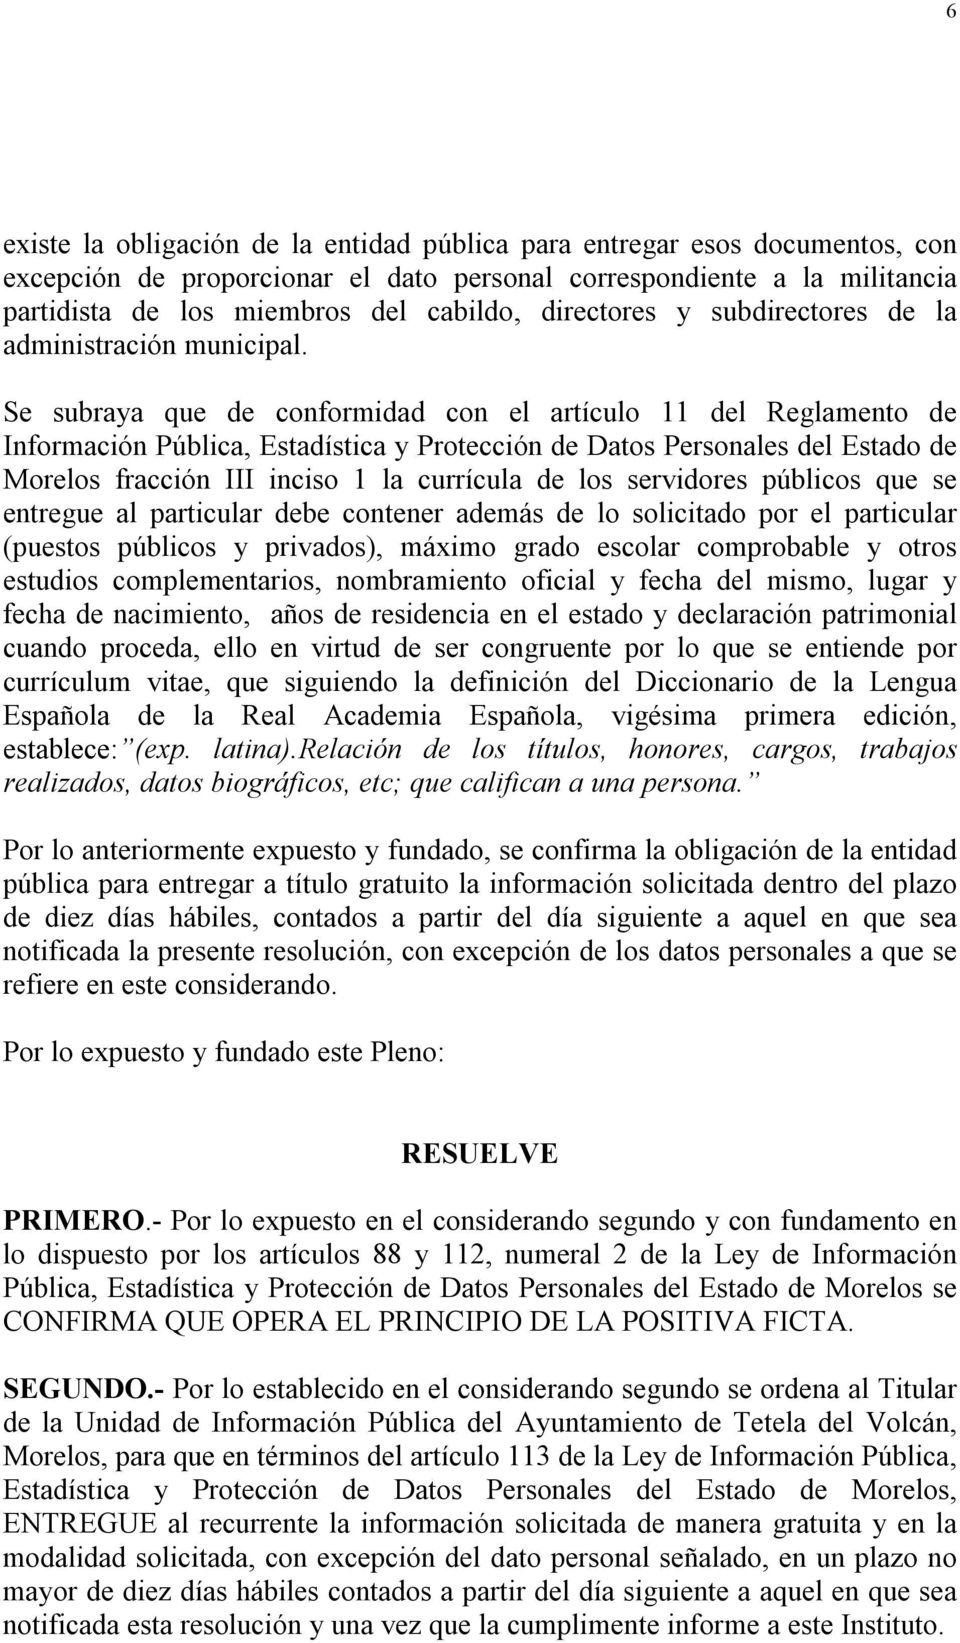 Se subraya que de conformidad con el artículo 11 del Reglamento de Información Pública, Estadística y Protección de Datos Personales del Estado de Morelos fracción III inciso 1 la currícula de los